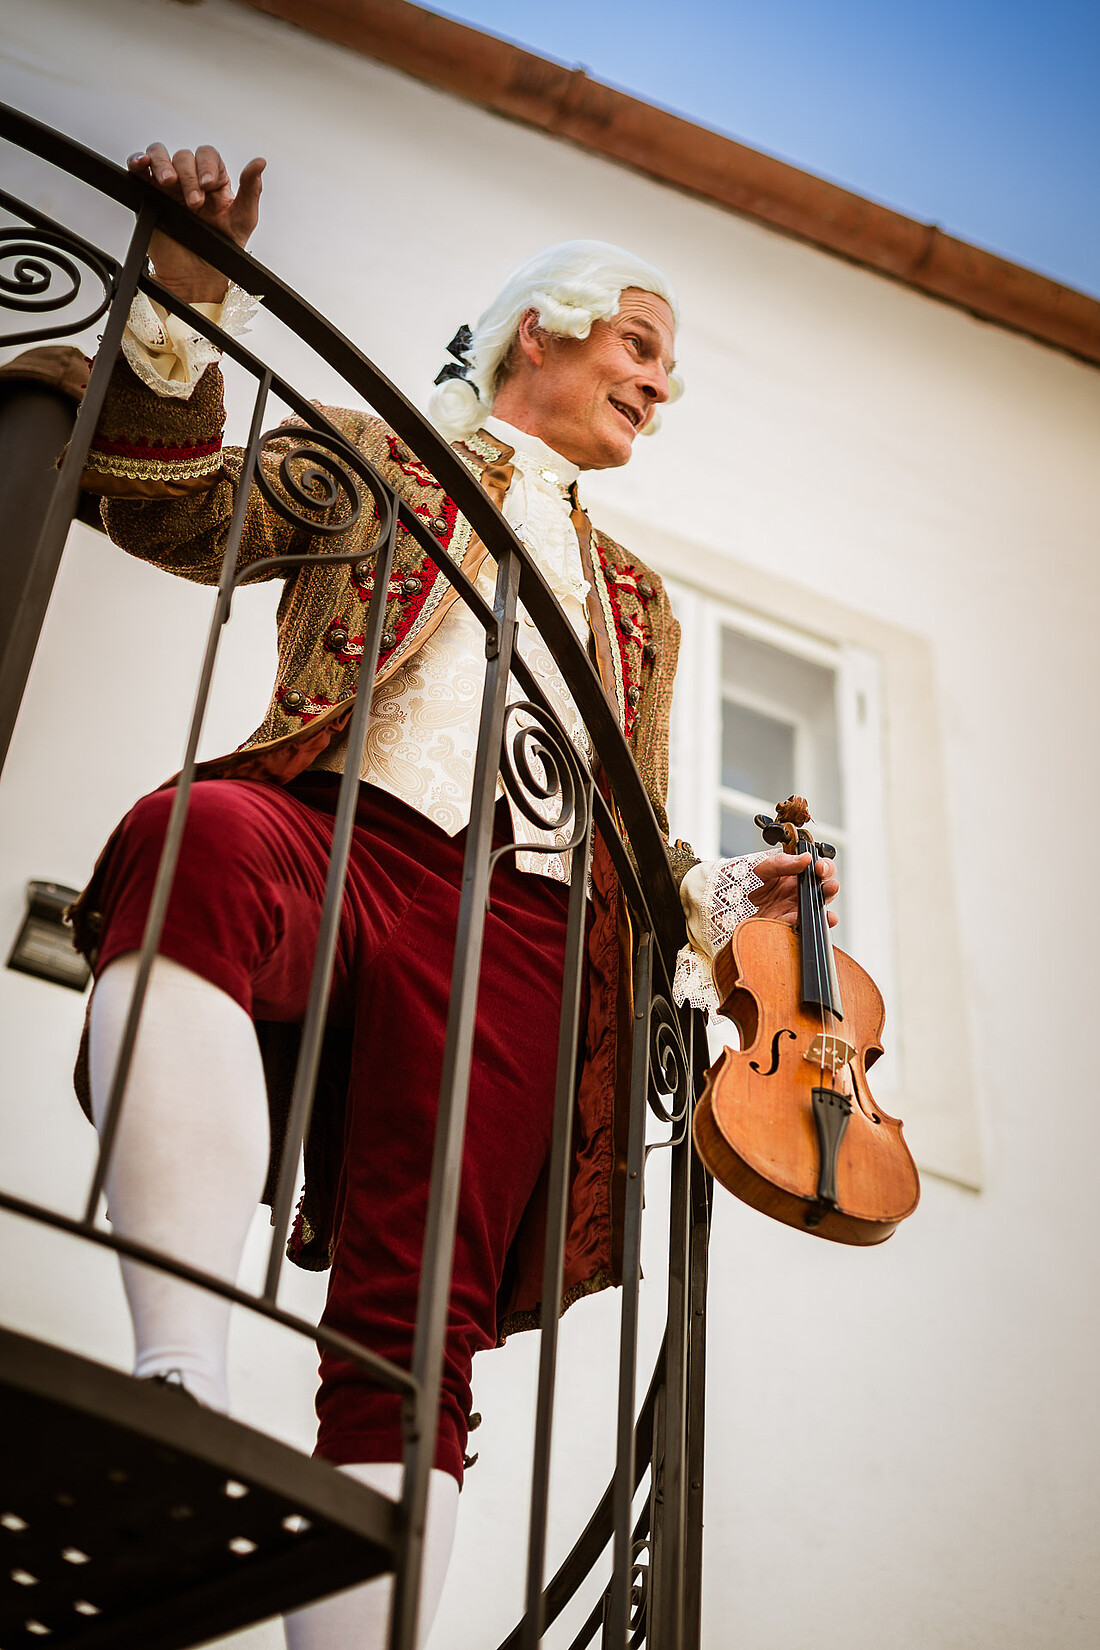 Mann in barockem Kostüm und Geige steht auf einer Wendeltreppe